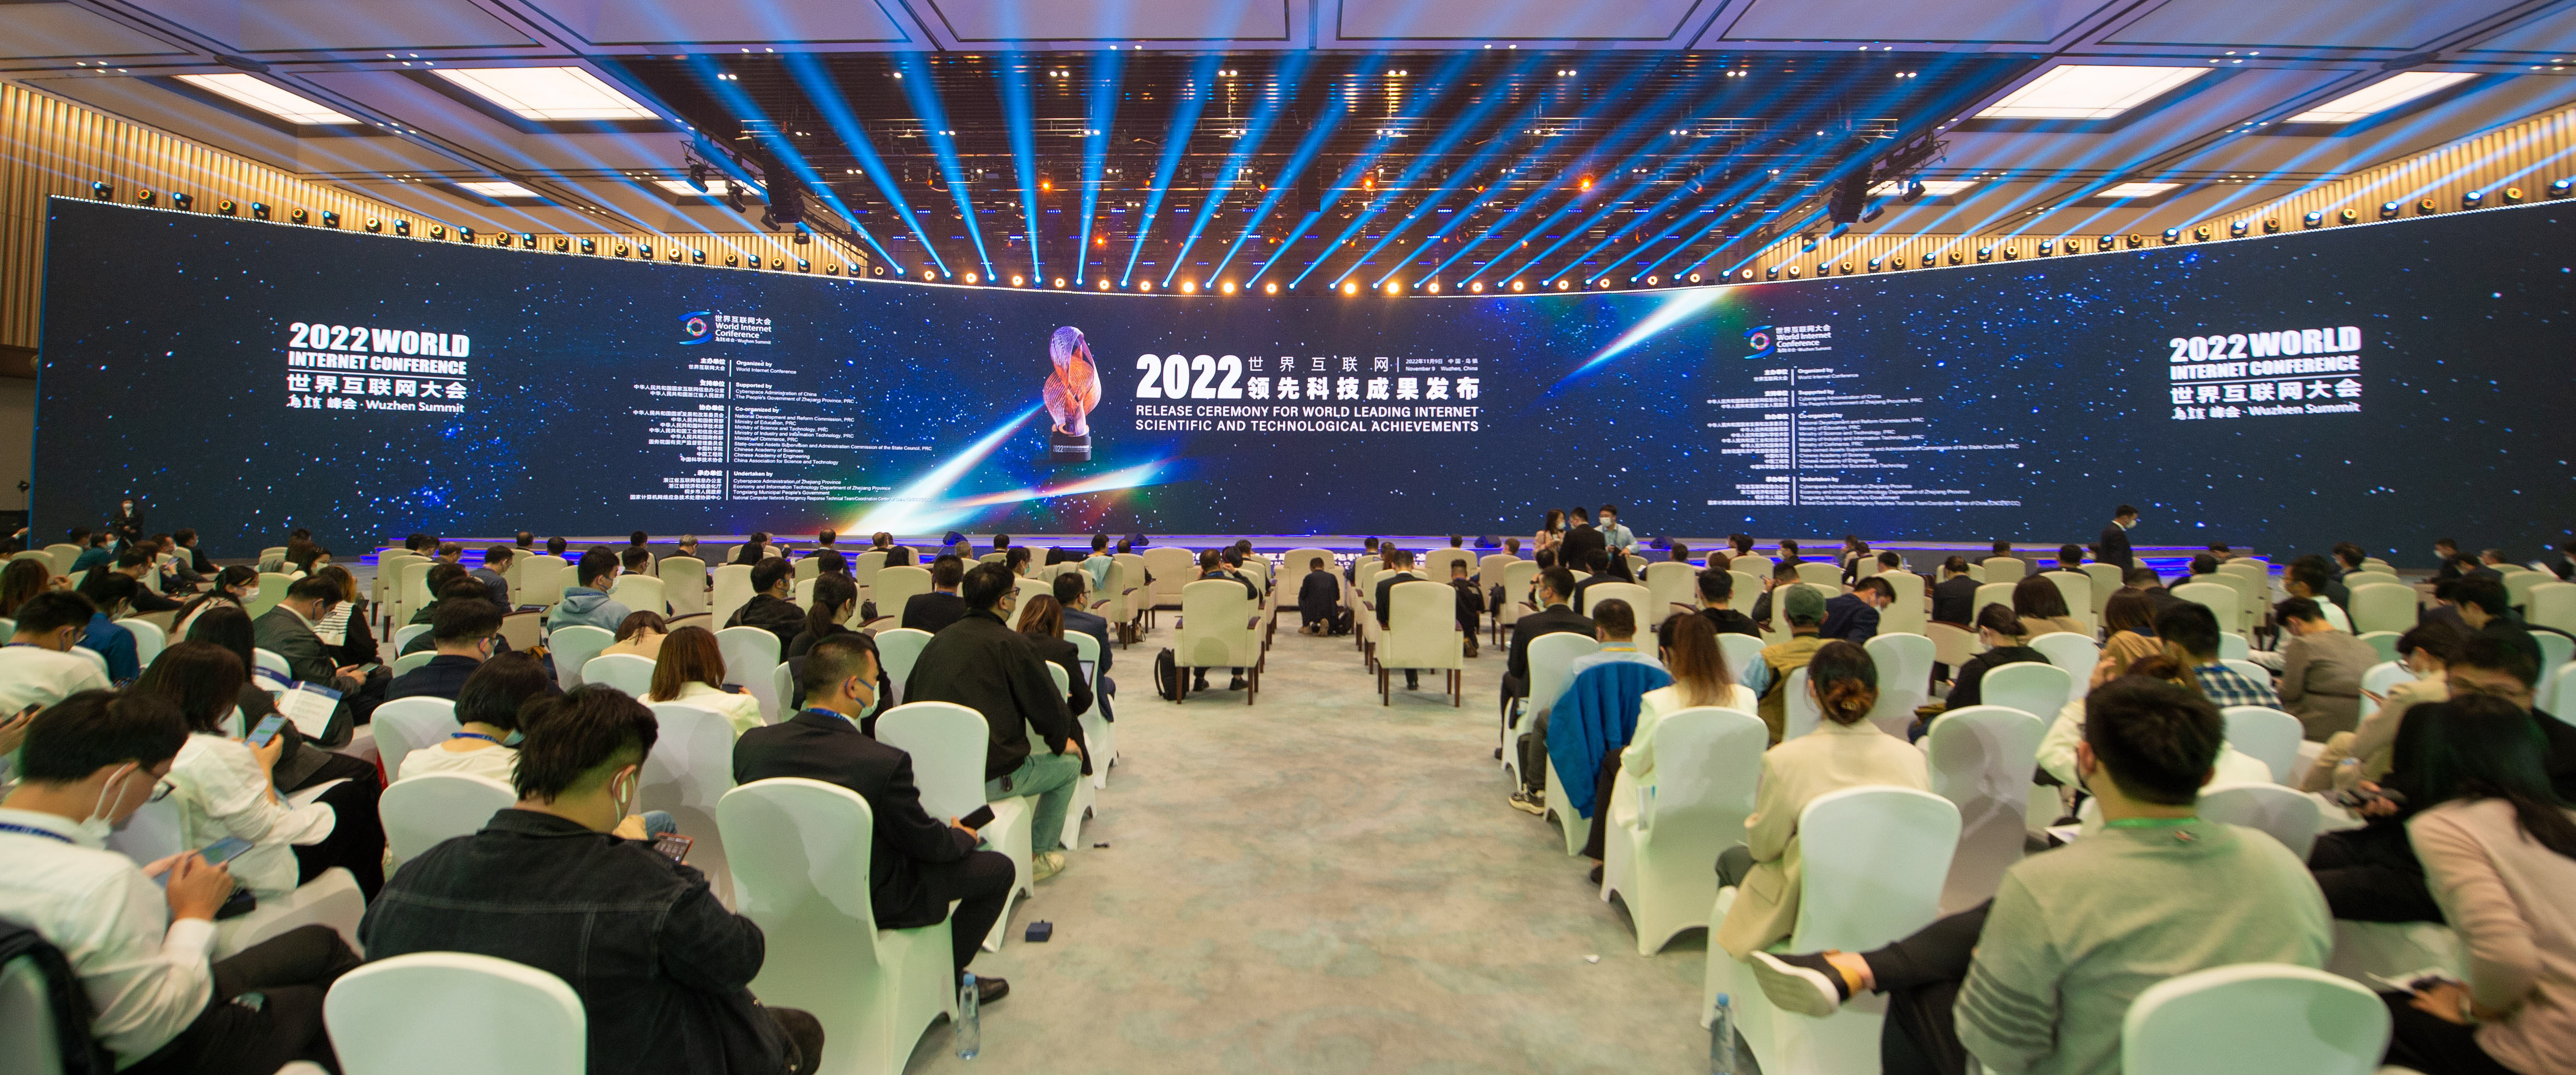 2022年世界互联网大会乌镇峰会参会人数创历届之最